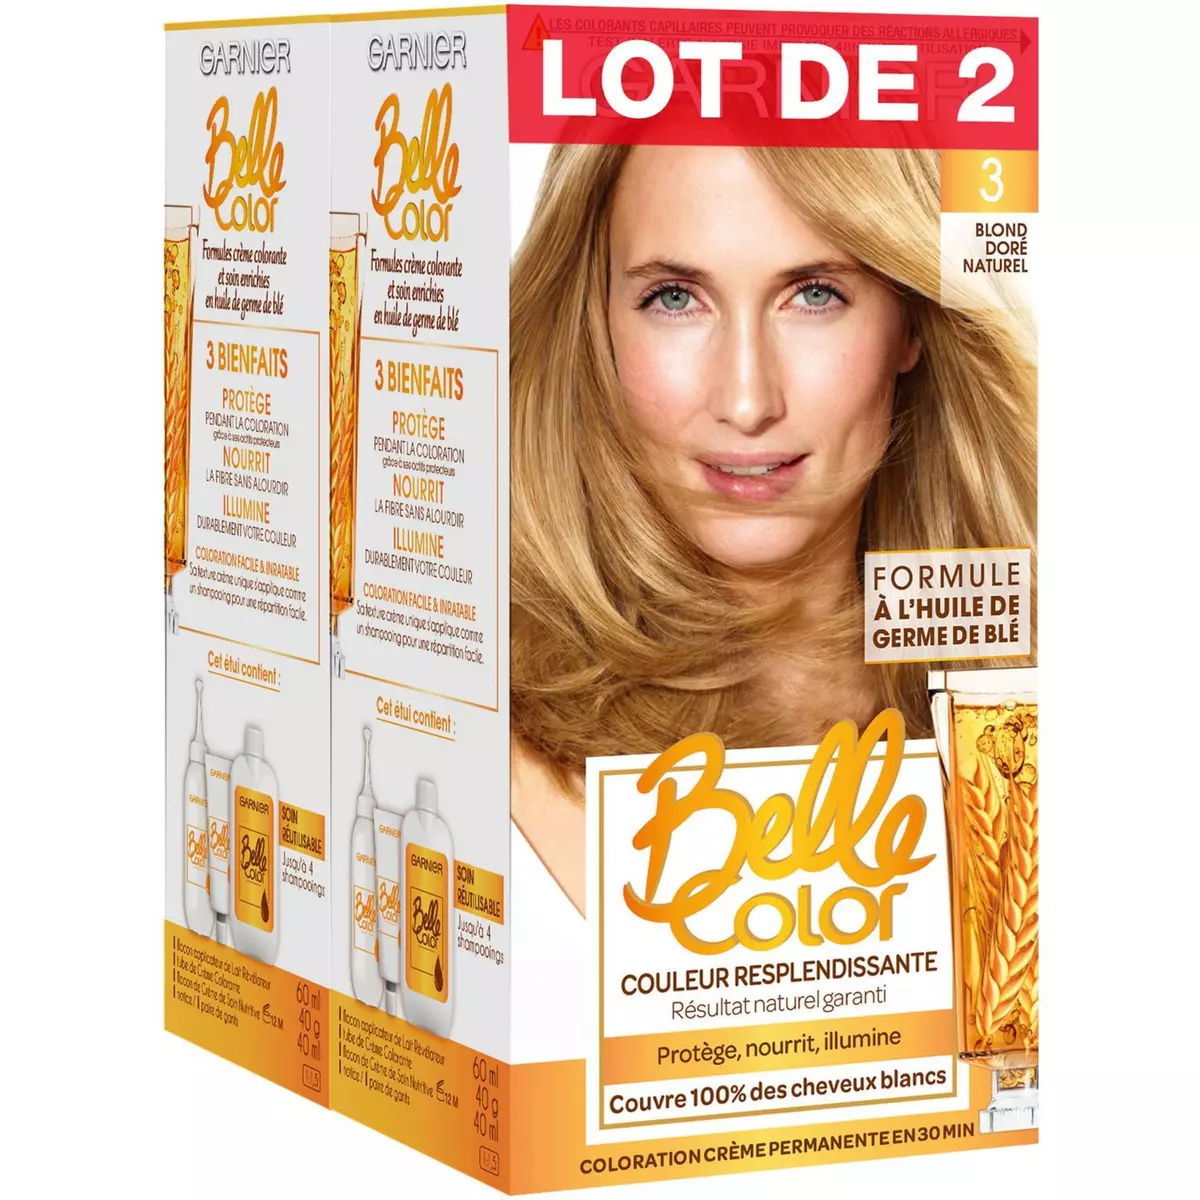 GARNIER Belle Color coloration permanente 3 blond doré naturel 2x3 produits 2 kits